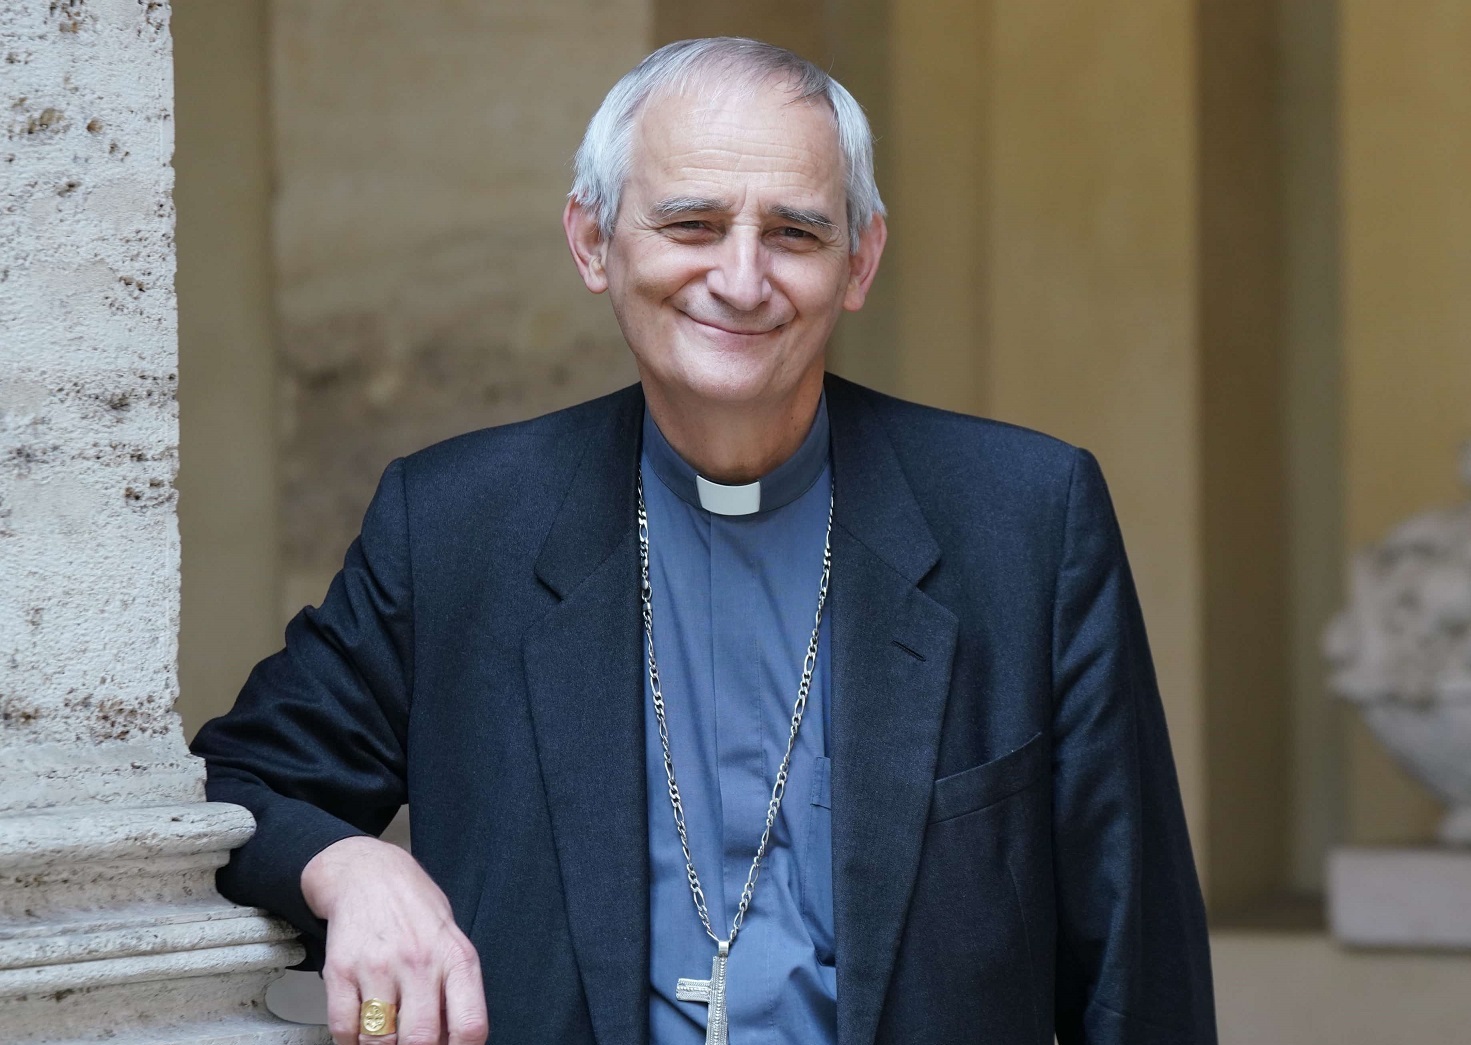 Кардинал Дзуппи стал новым президентом епископата Италии